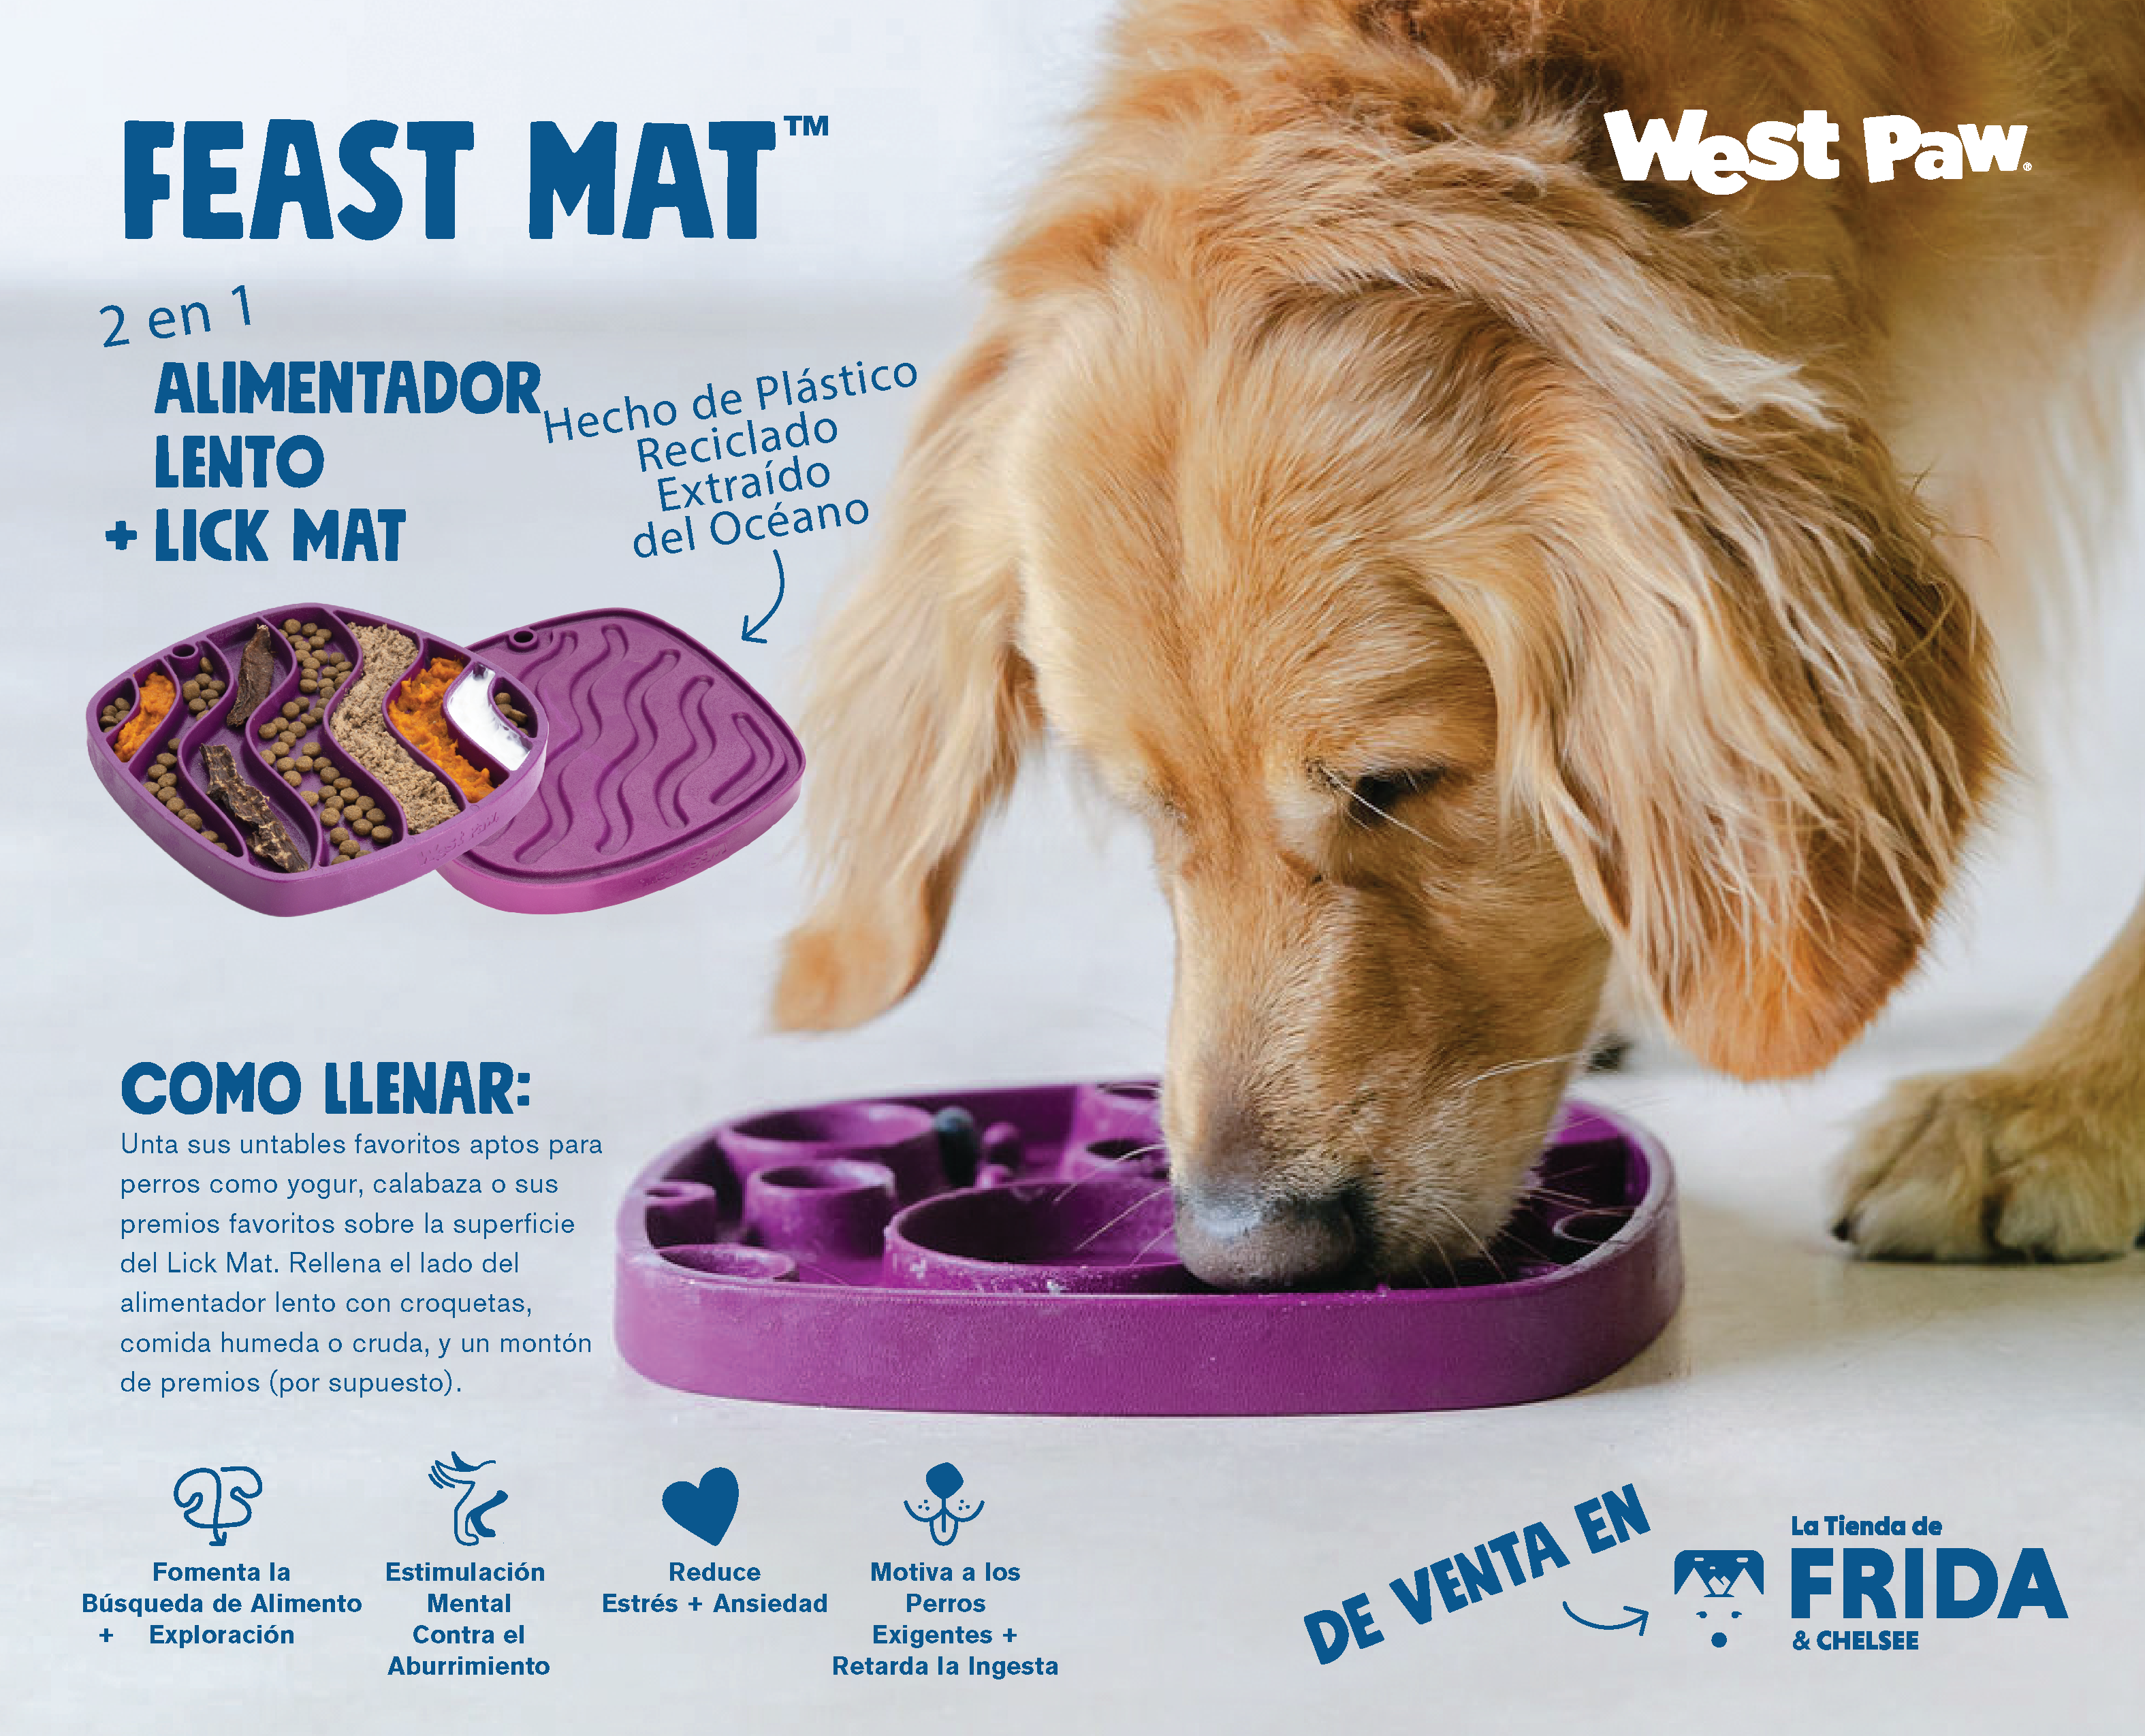 Feast Mat: Alimentador Lento y Lick Mat Morado - Tapete de Lamedura Todo en Uno de West Paw